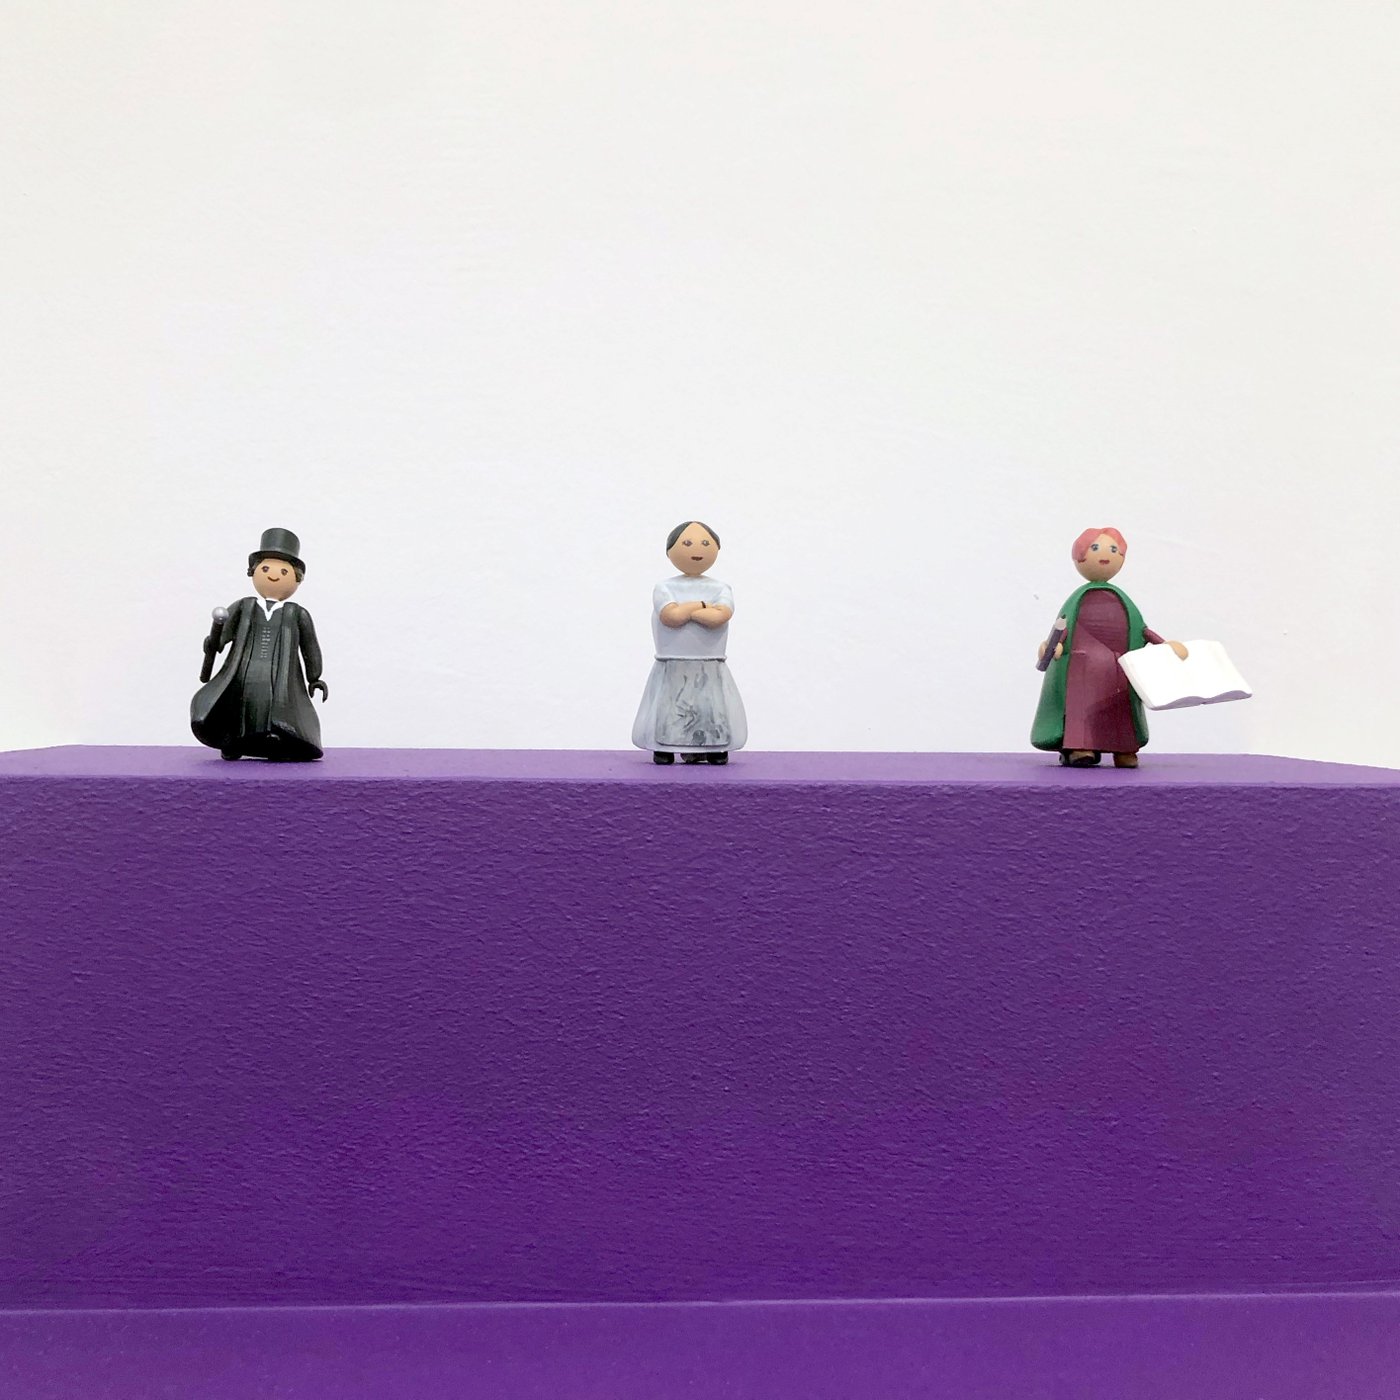 drei kleine Holzfiguren auf einem Lilafarbigen Podest, links ein Mann in schwarzem Anzug mit Stock und Zylinder, in der Mitte ein Frau in weißem Kleid mit verschänkten Armen, rechts eine Frau mit weinrotem Kleid, gründem Schal und einem Buch in der Hand